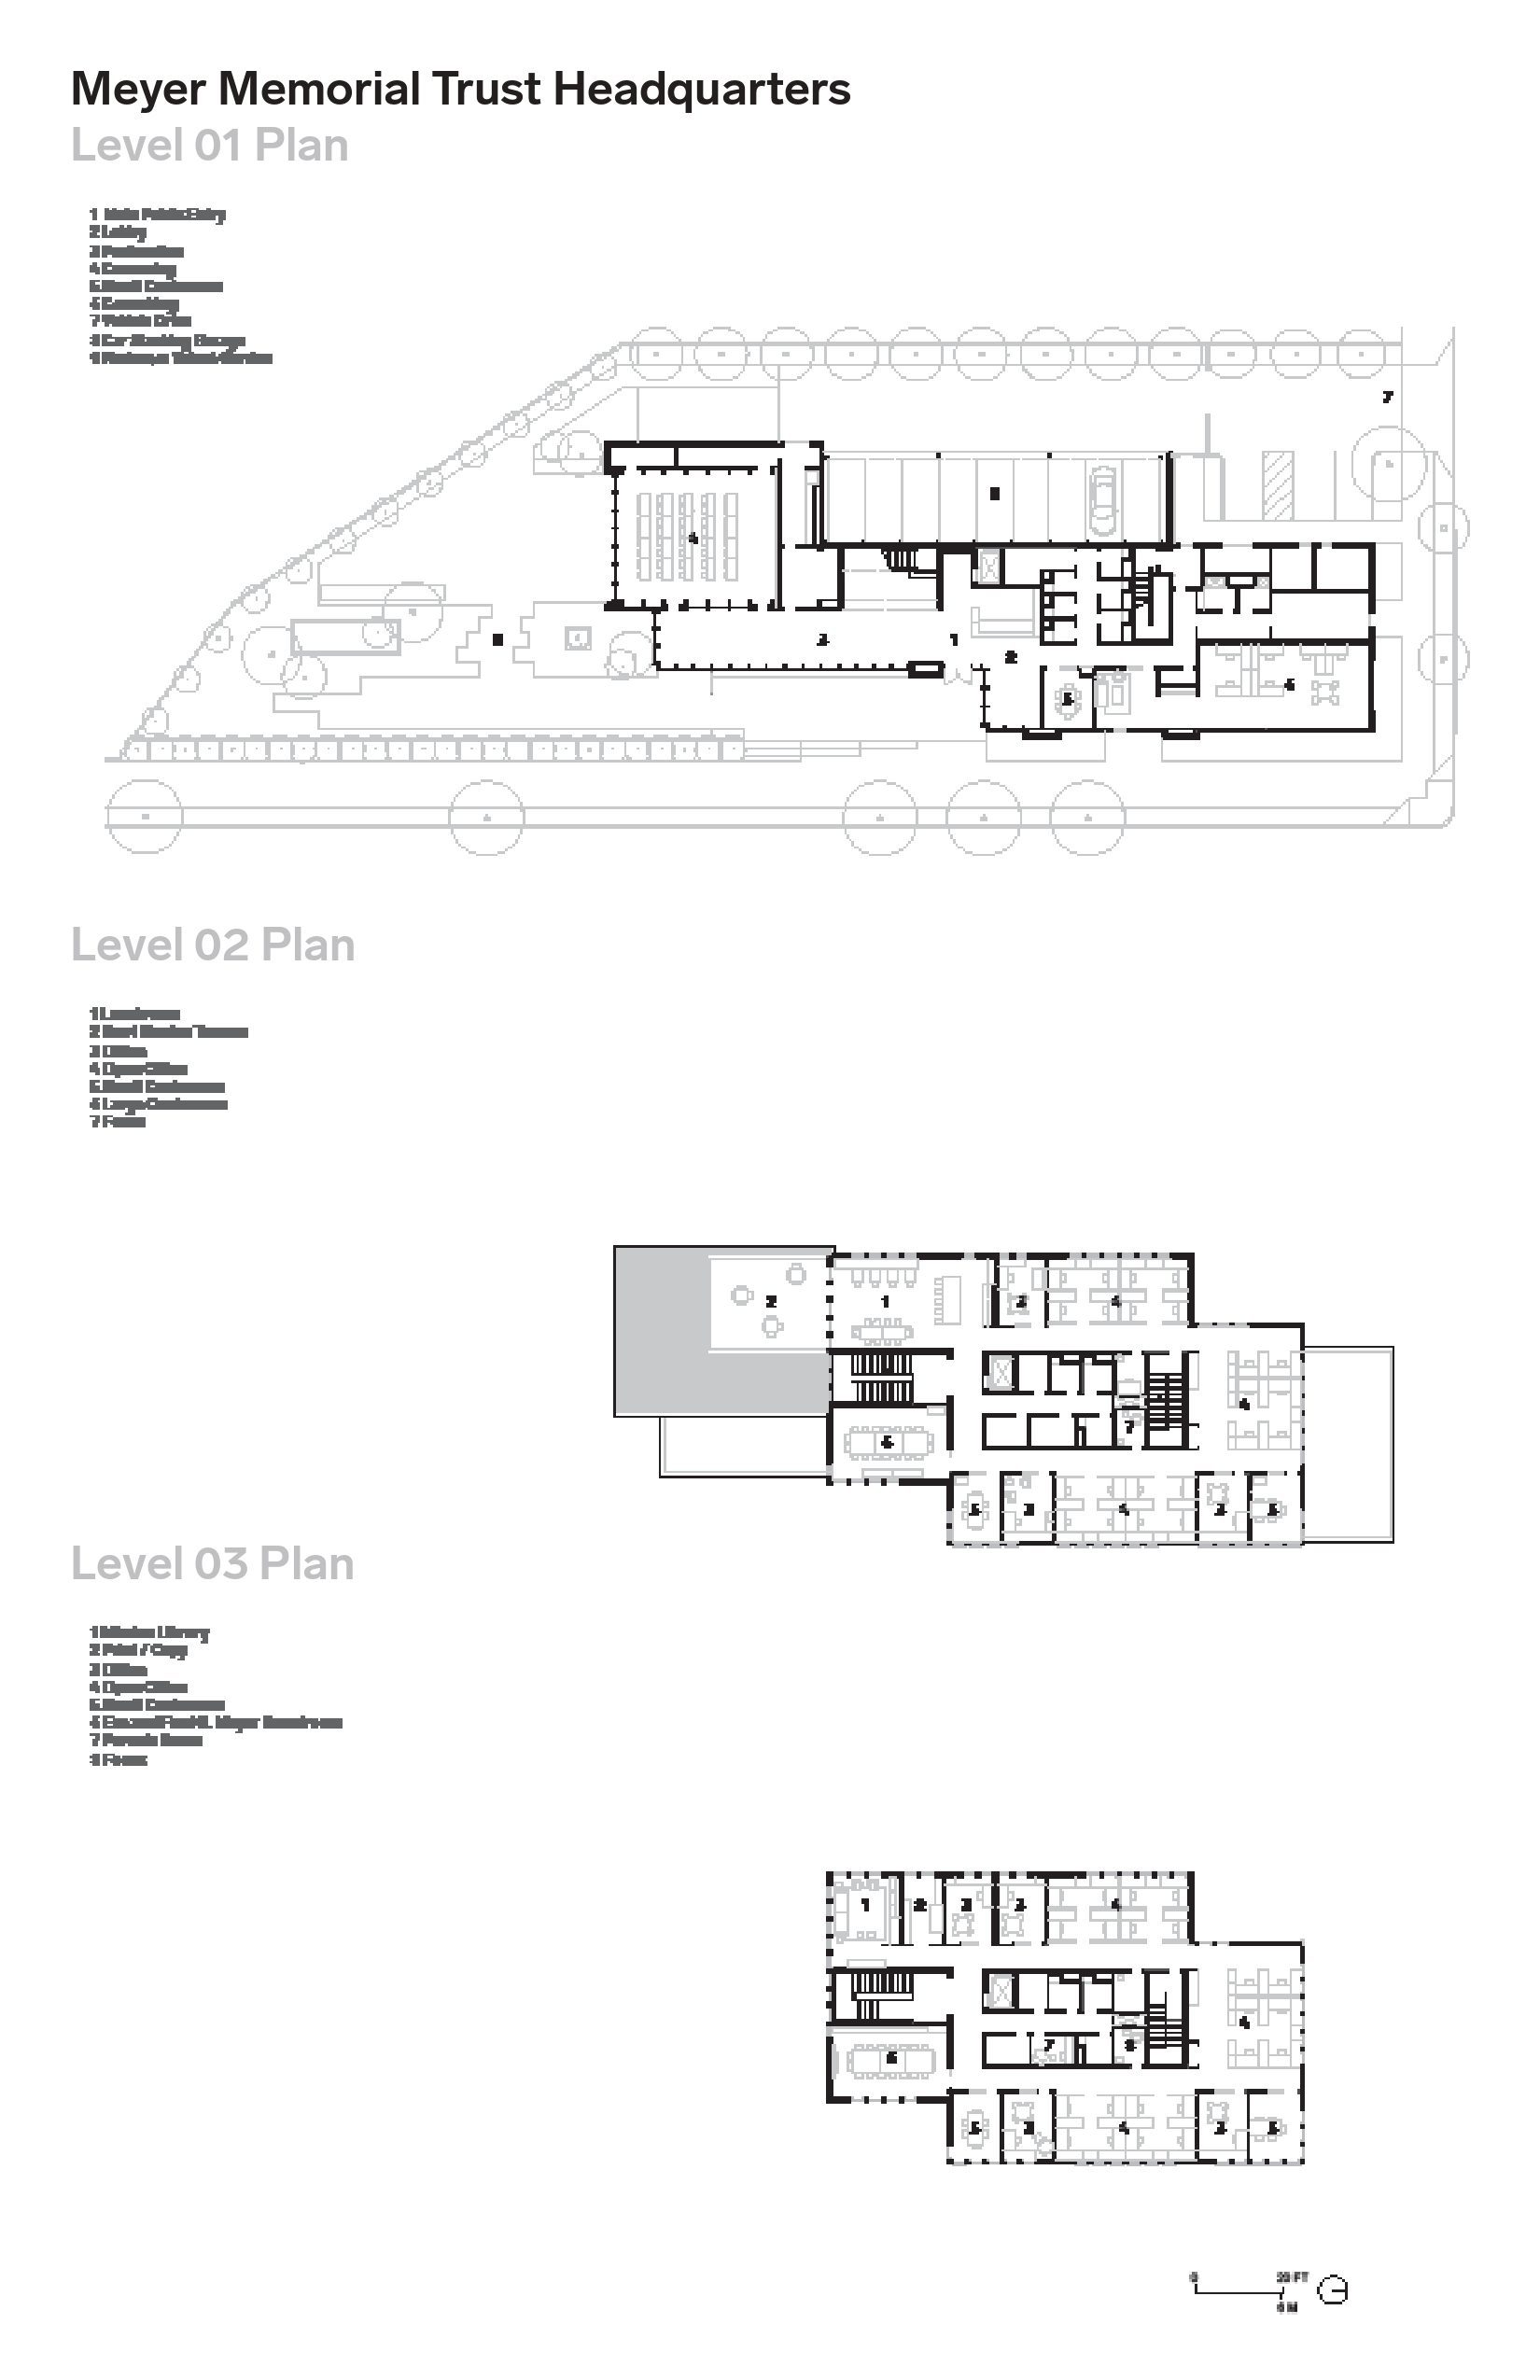 Floorplan drawings of Meyer Memorial Trust